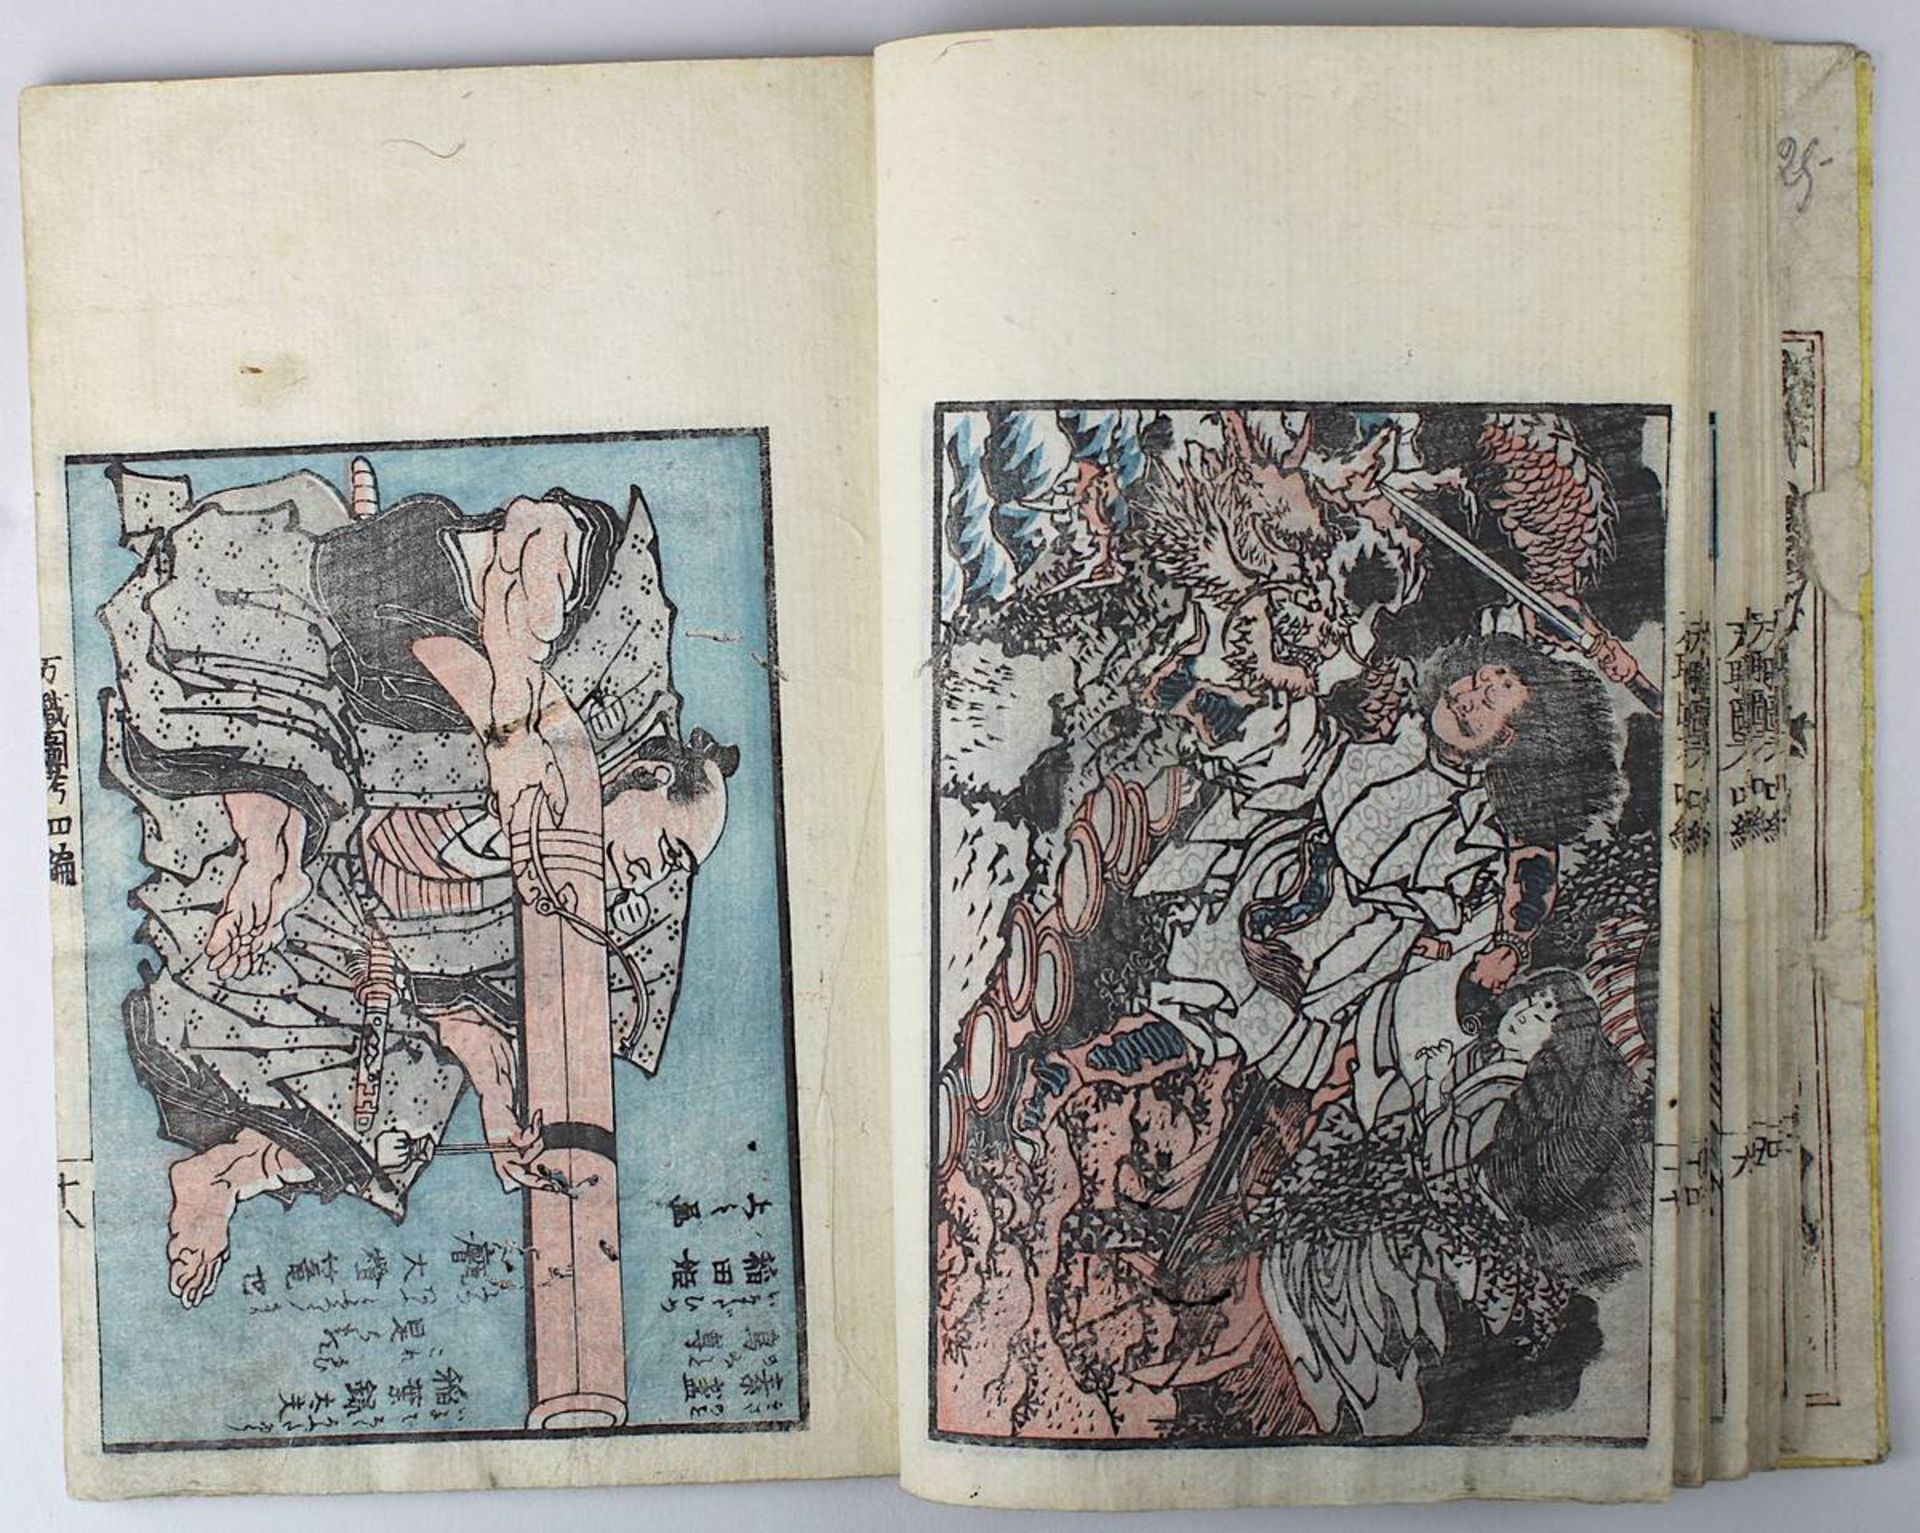 Katsushika Taito (aktiv Japan 1810 - 1853), Holzschnittbuch Banshoku zuko, Bd. 3 von insgesamt 5